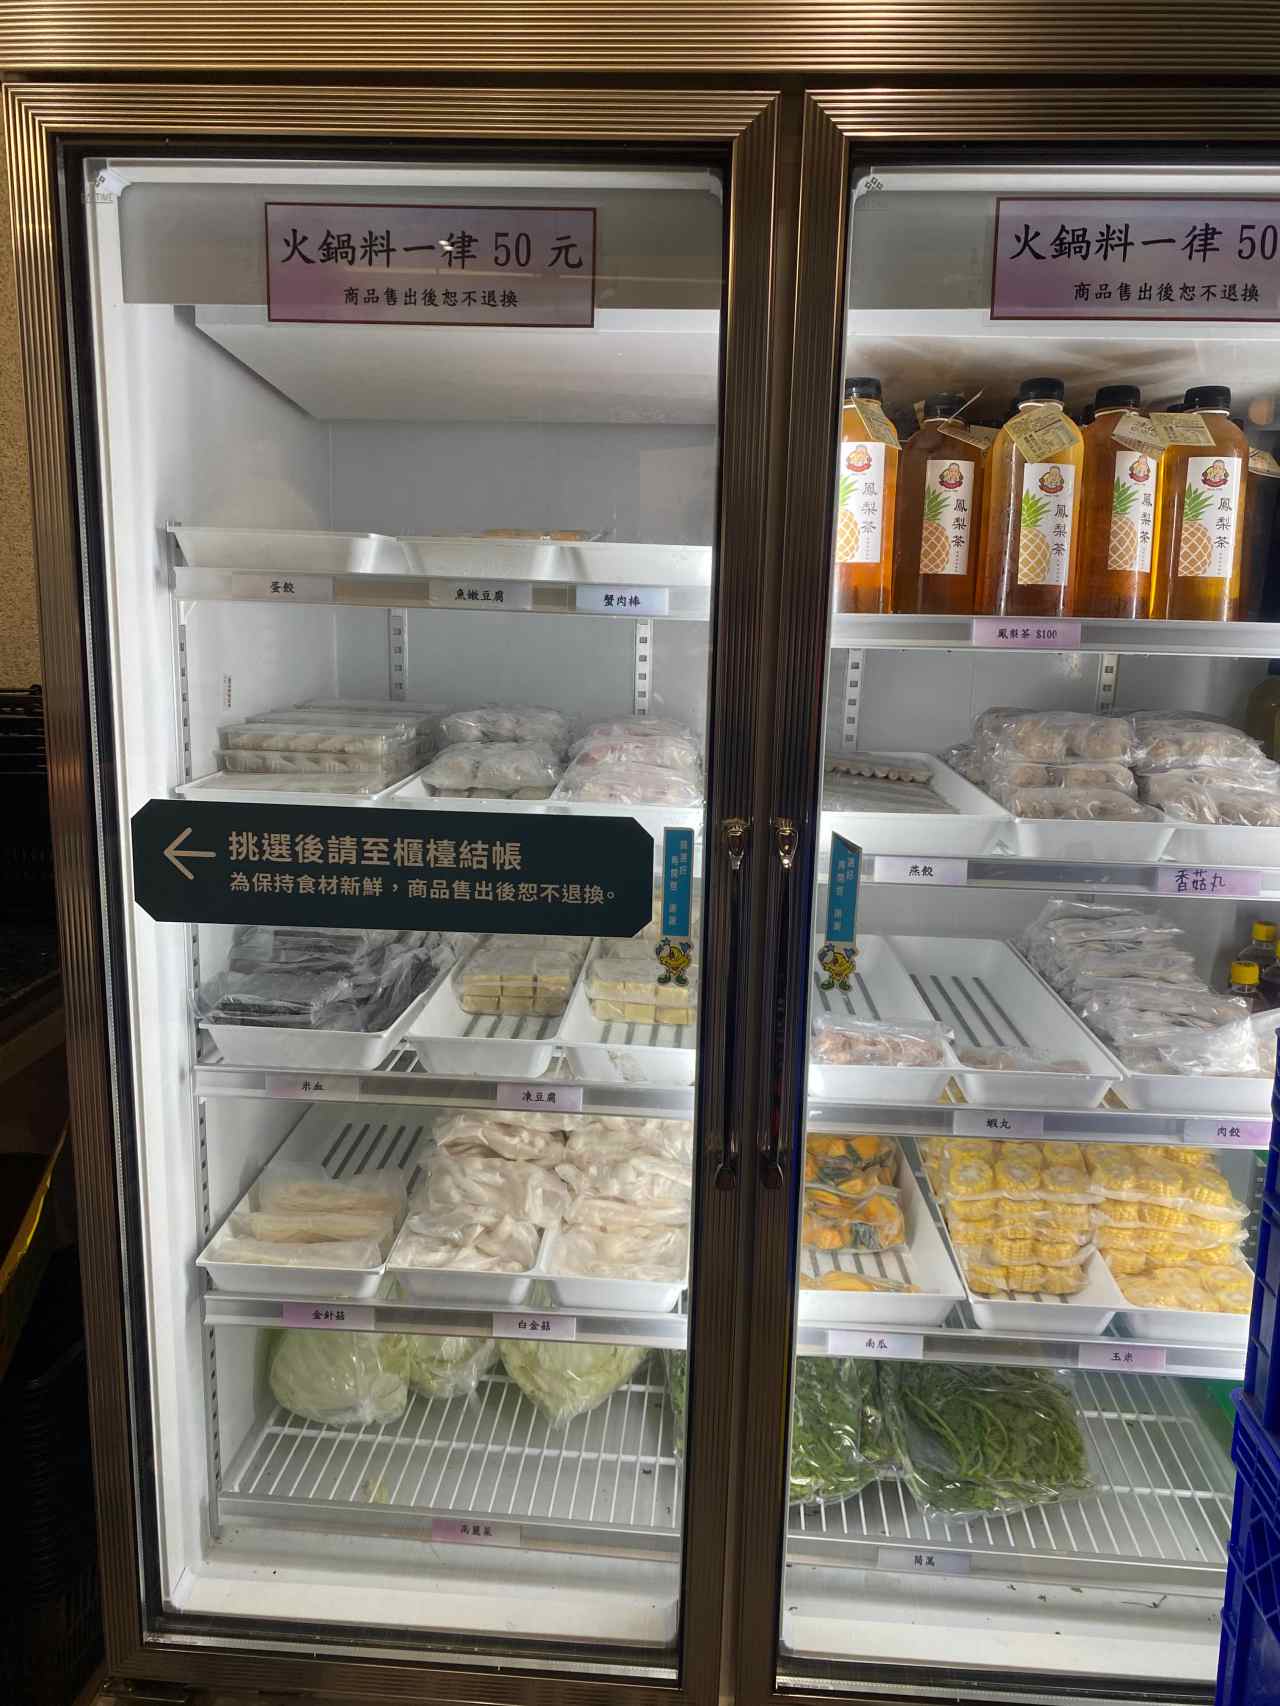 【台南】阿裕牛肉湯-滷肉飯吃到飽-很舒適寬敞的牛肉湯店